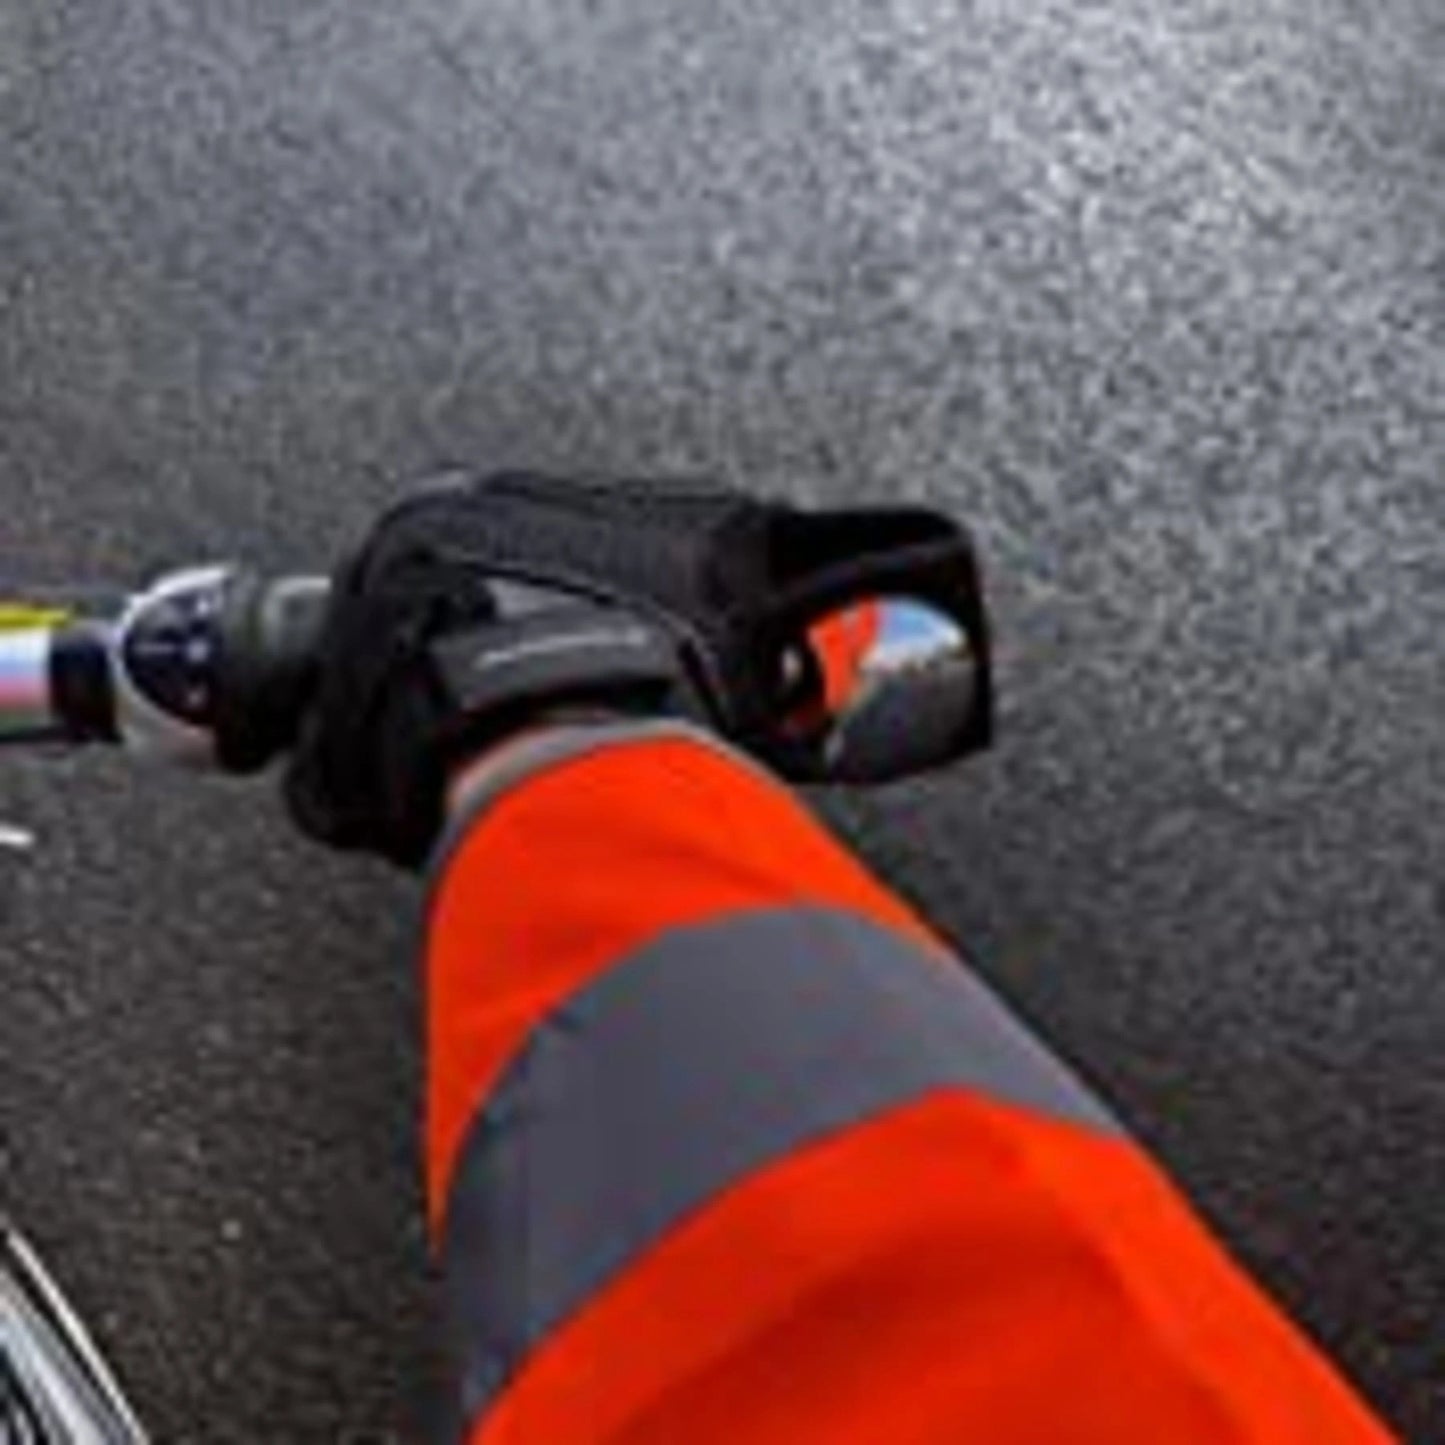 Καθρέφτης ασφαλείας καρπού ποδηλάτου -1+1 GRATIS